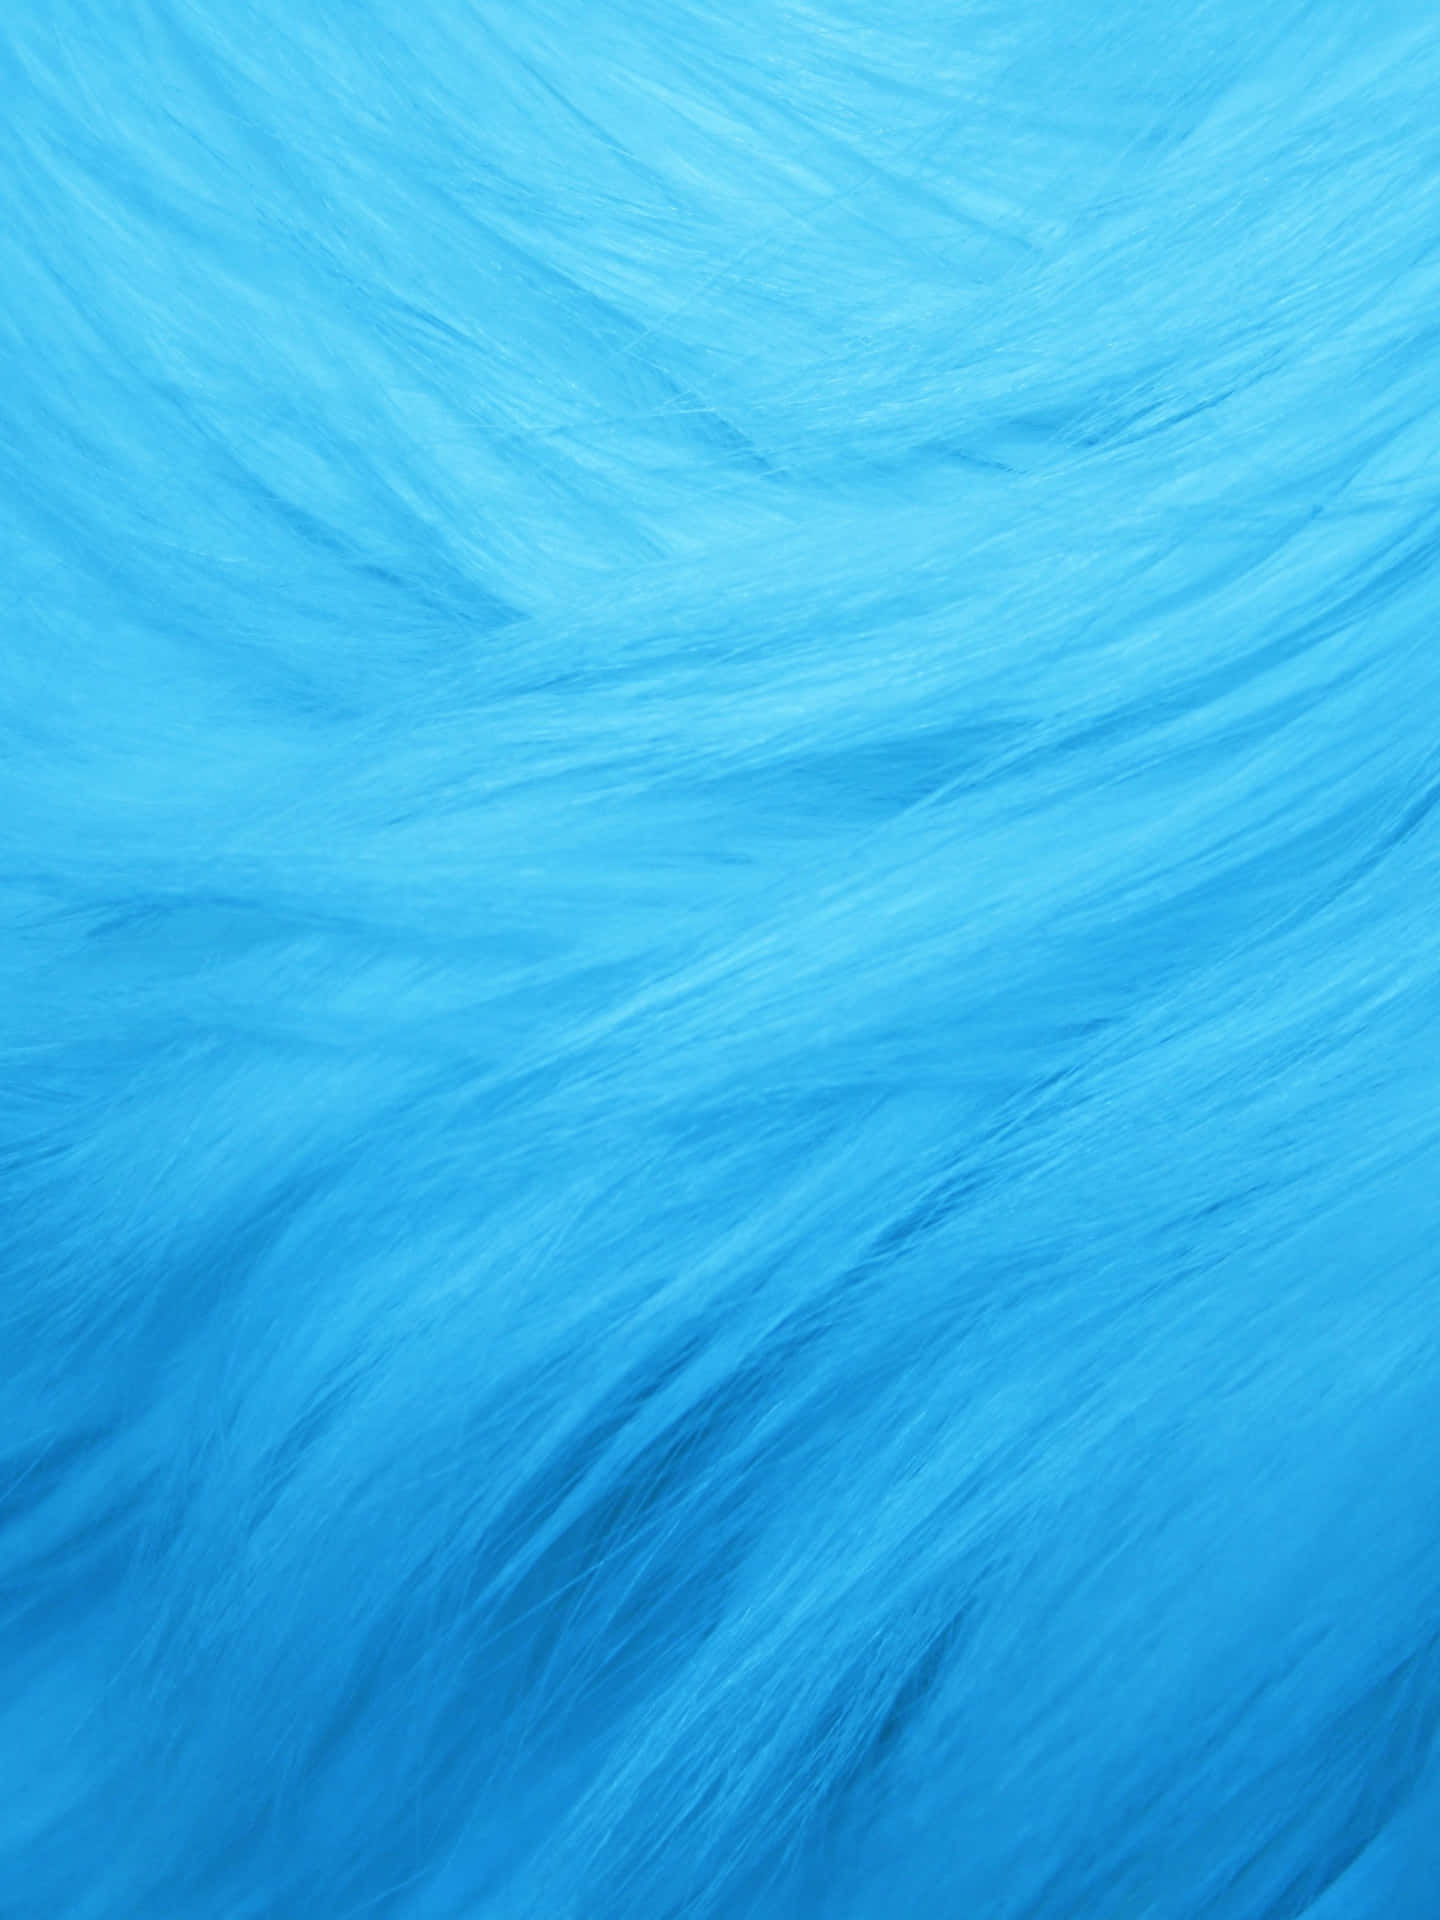 Cool Light Blue Furry Wallpaper